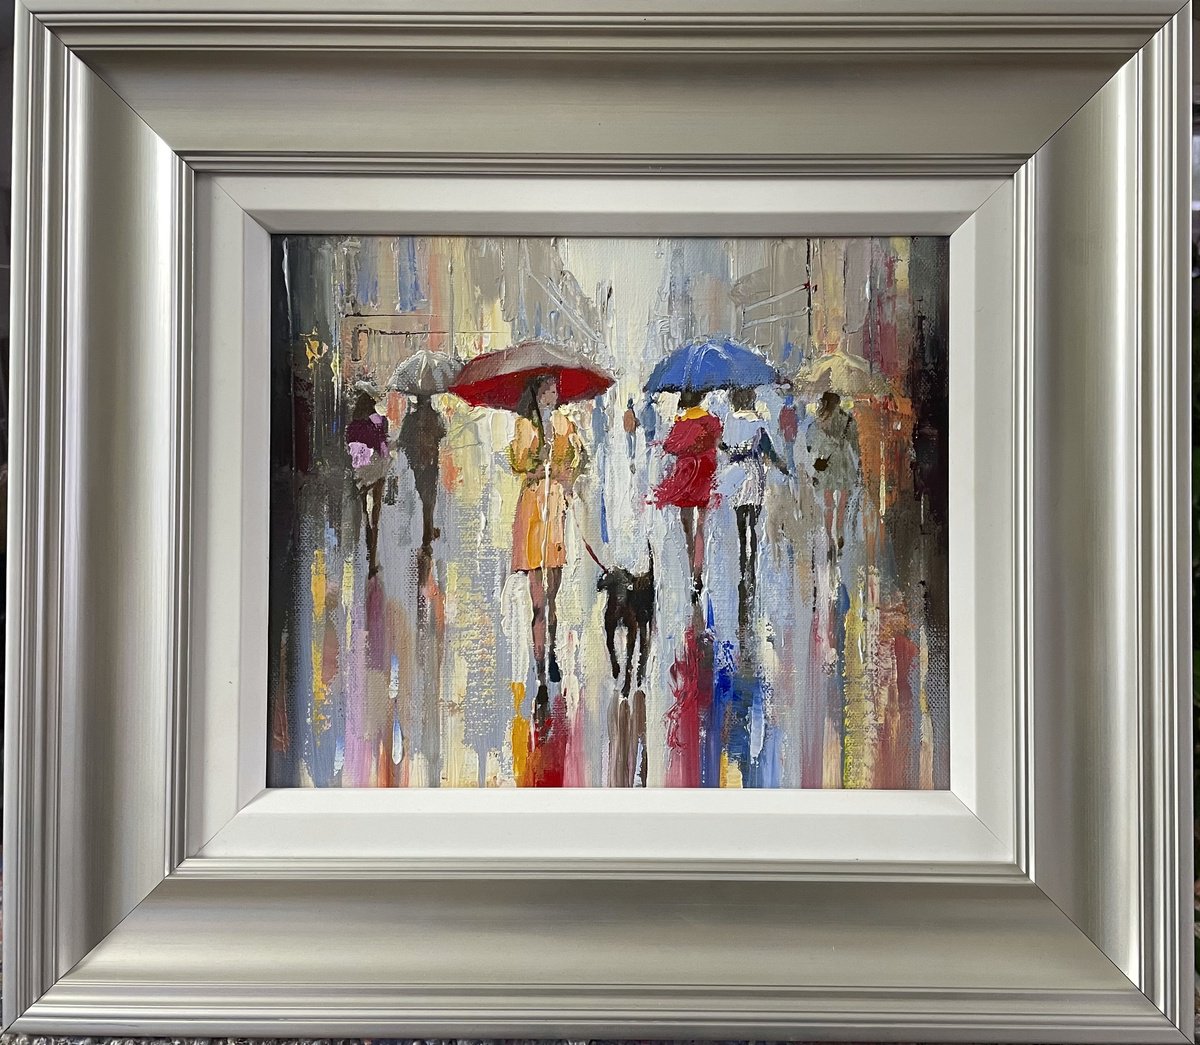 Rain In Paris by Ewa Czarniecka